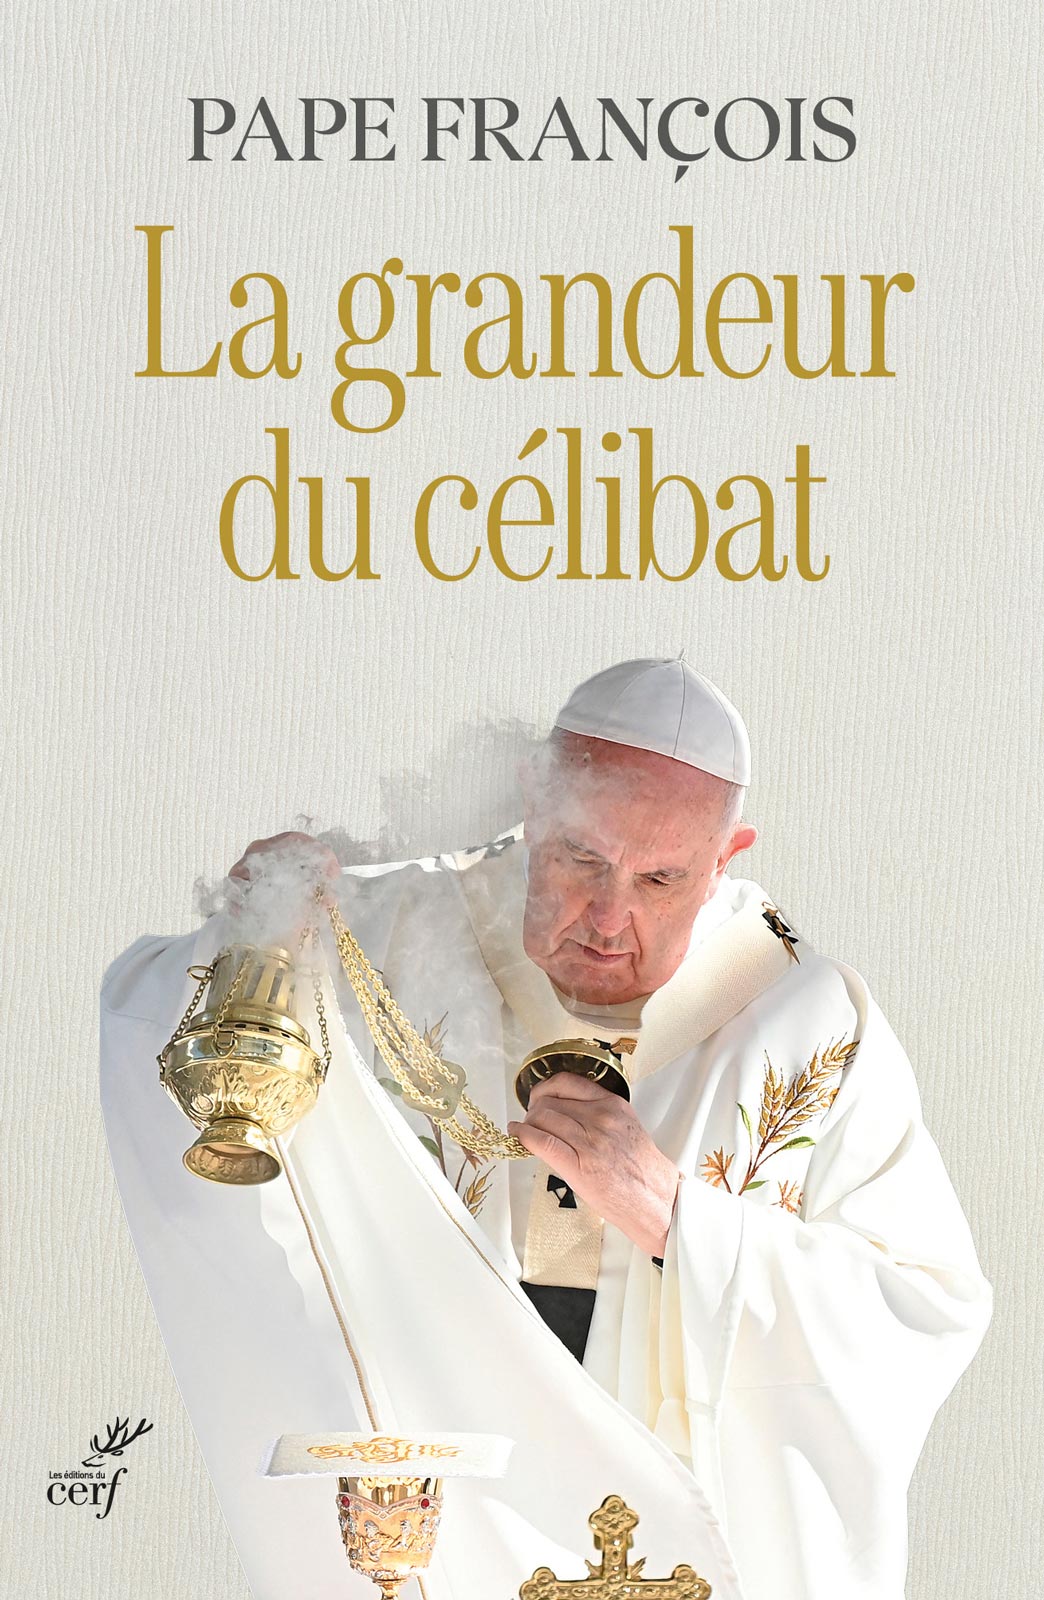 pape francois